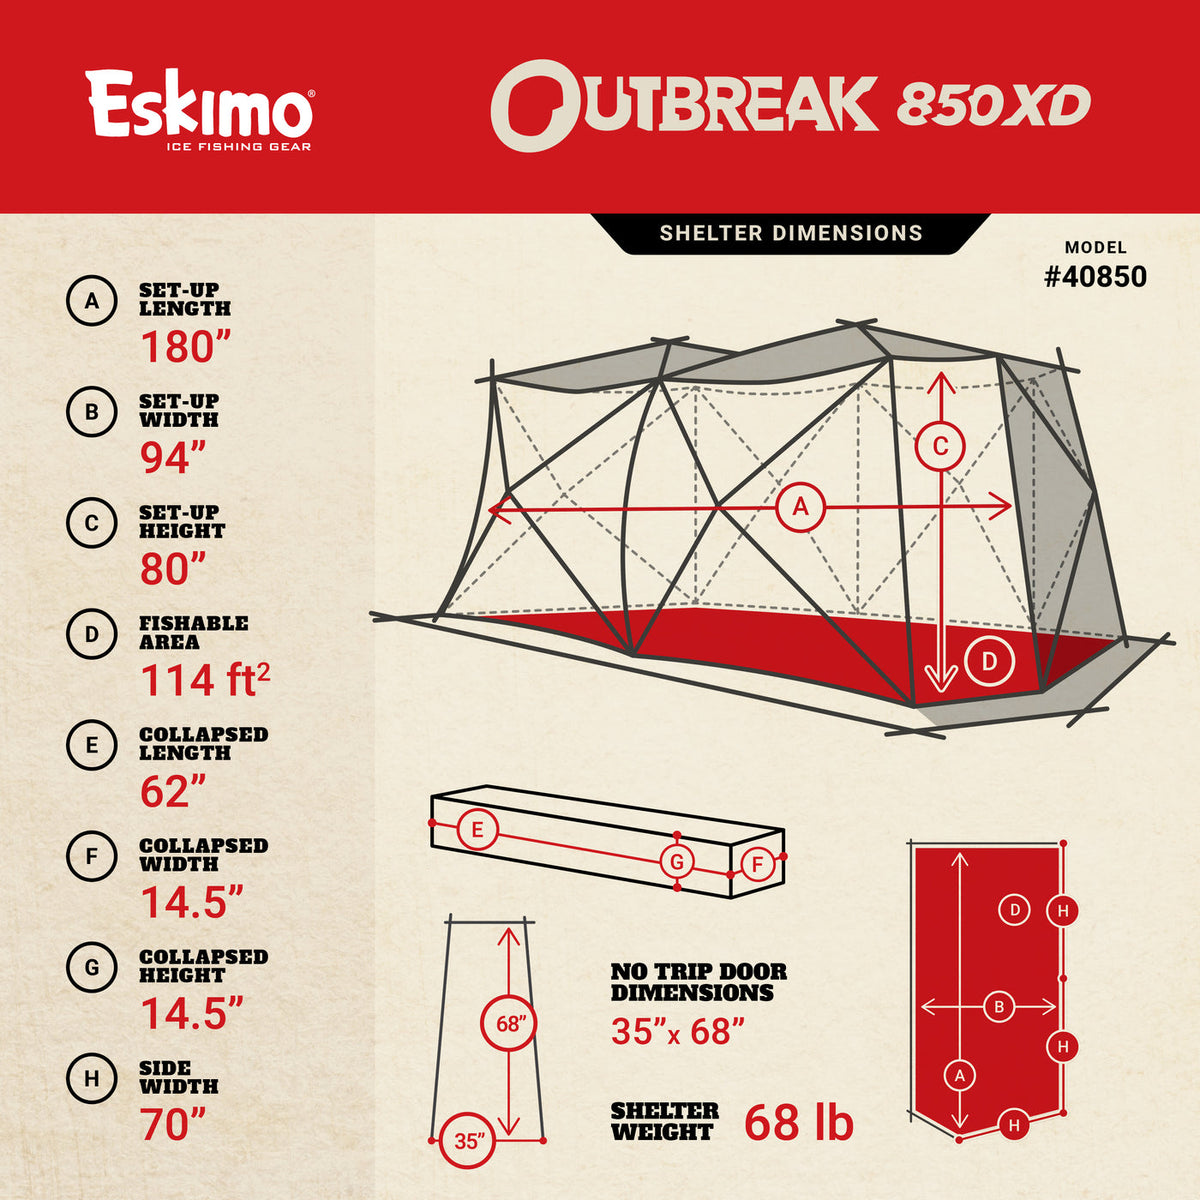 Eskimo Outbreak 850XD